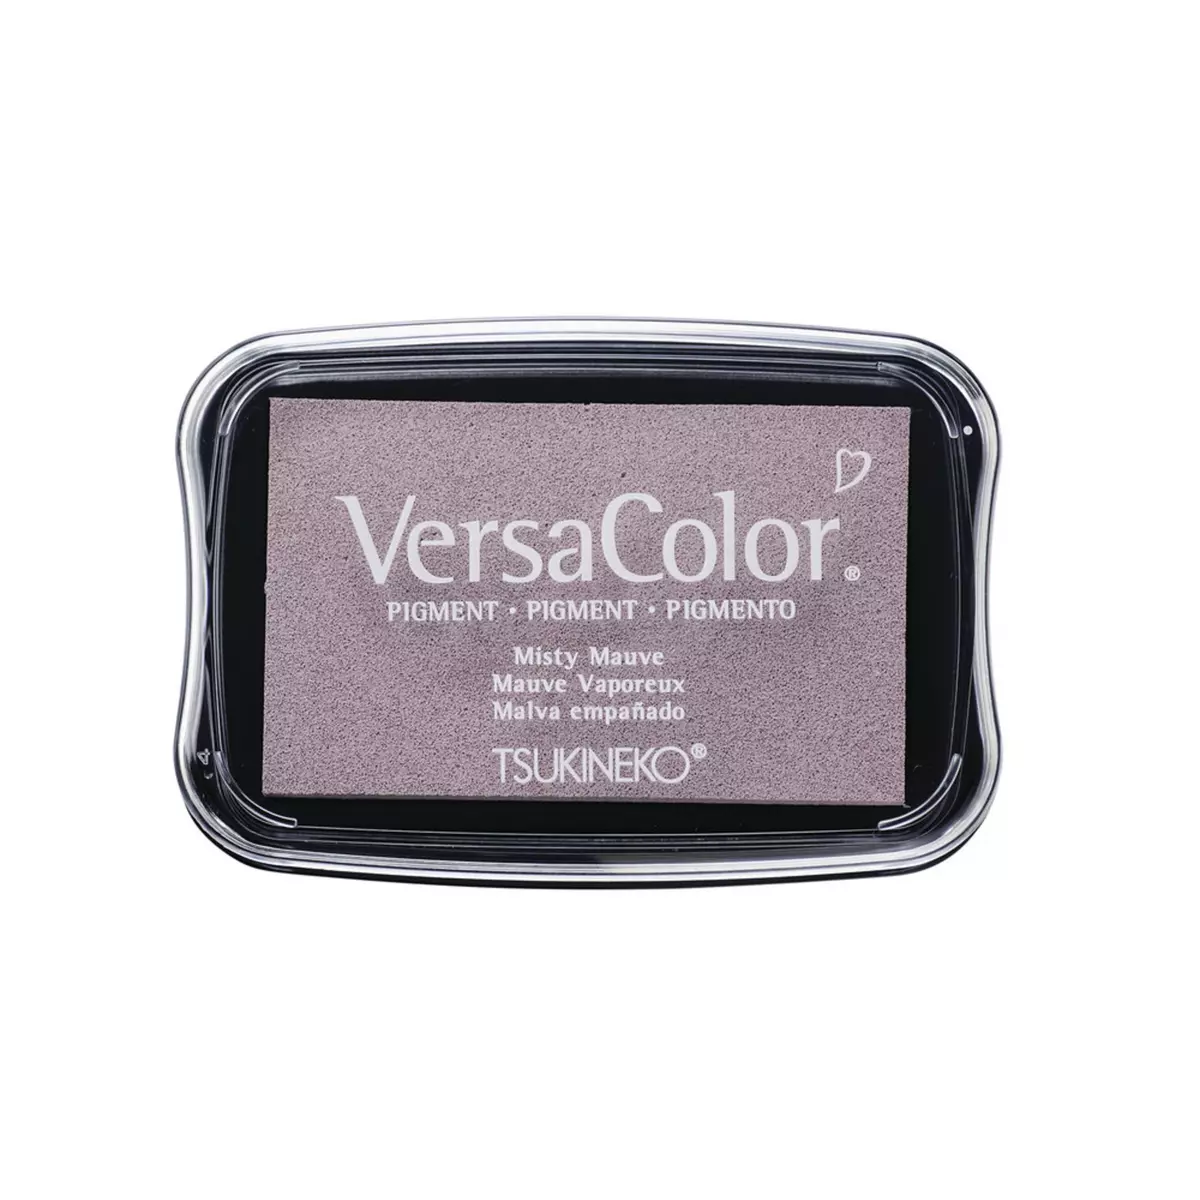 Rayher Versa Color Tampon encreur pigmenté, misty mauve, 9,6x6,3x1,8cm